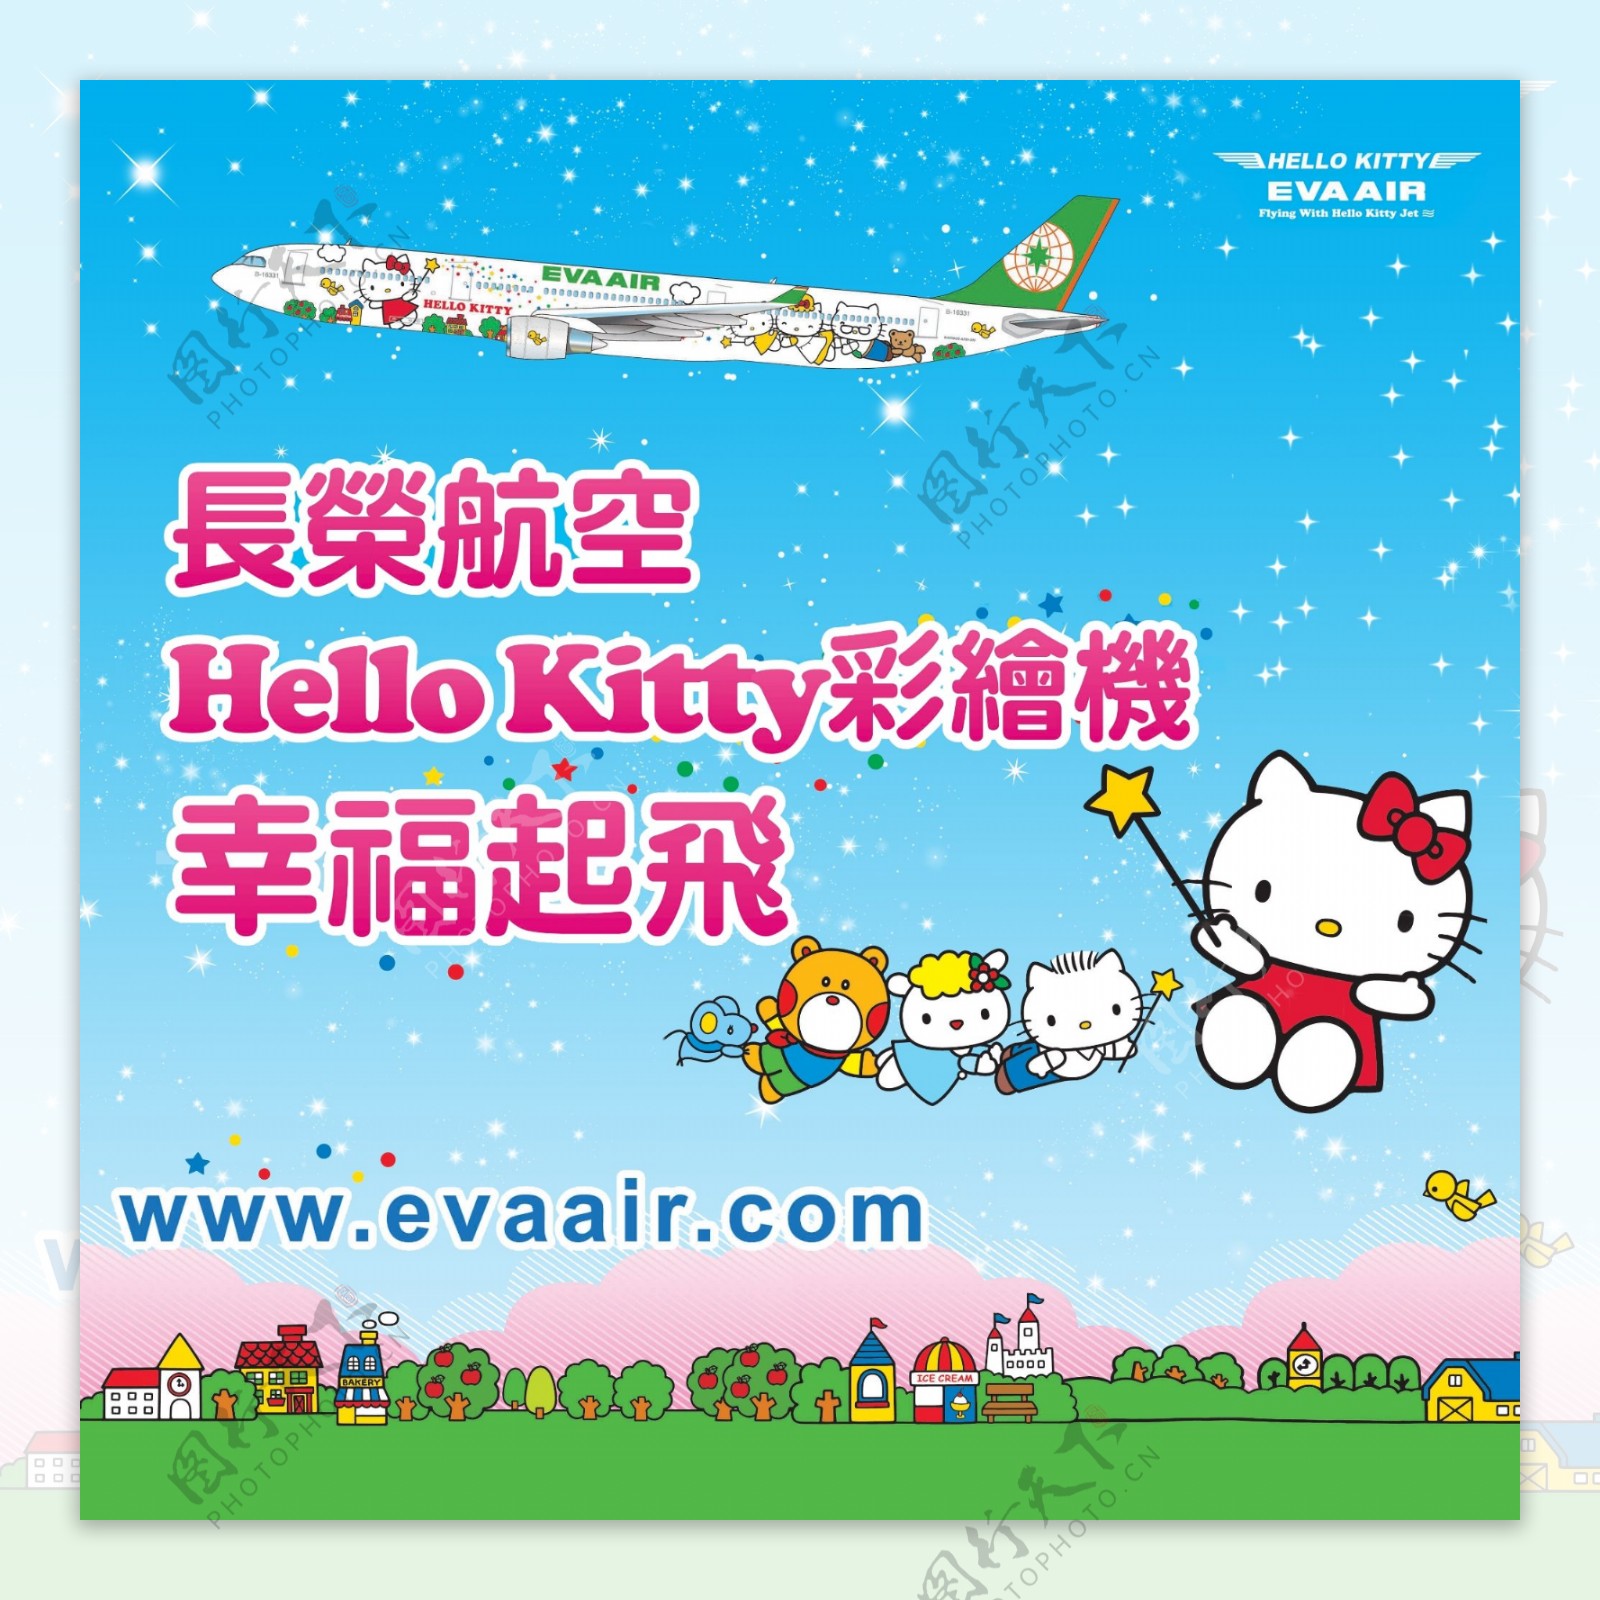 立荣航空公司卡通宣传海报